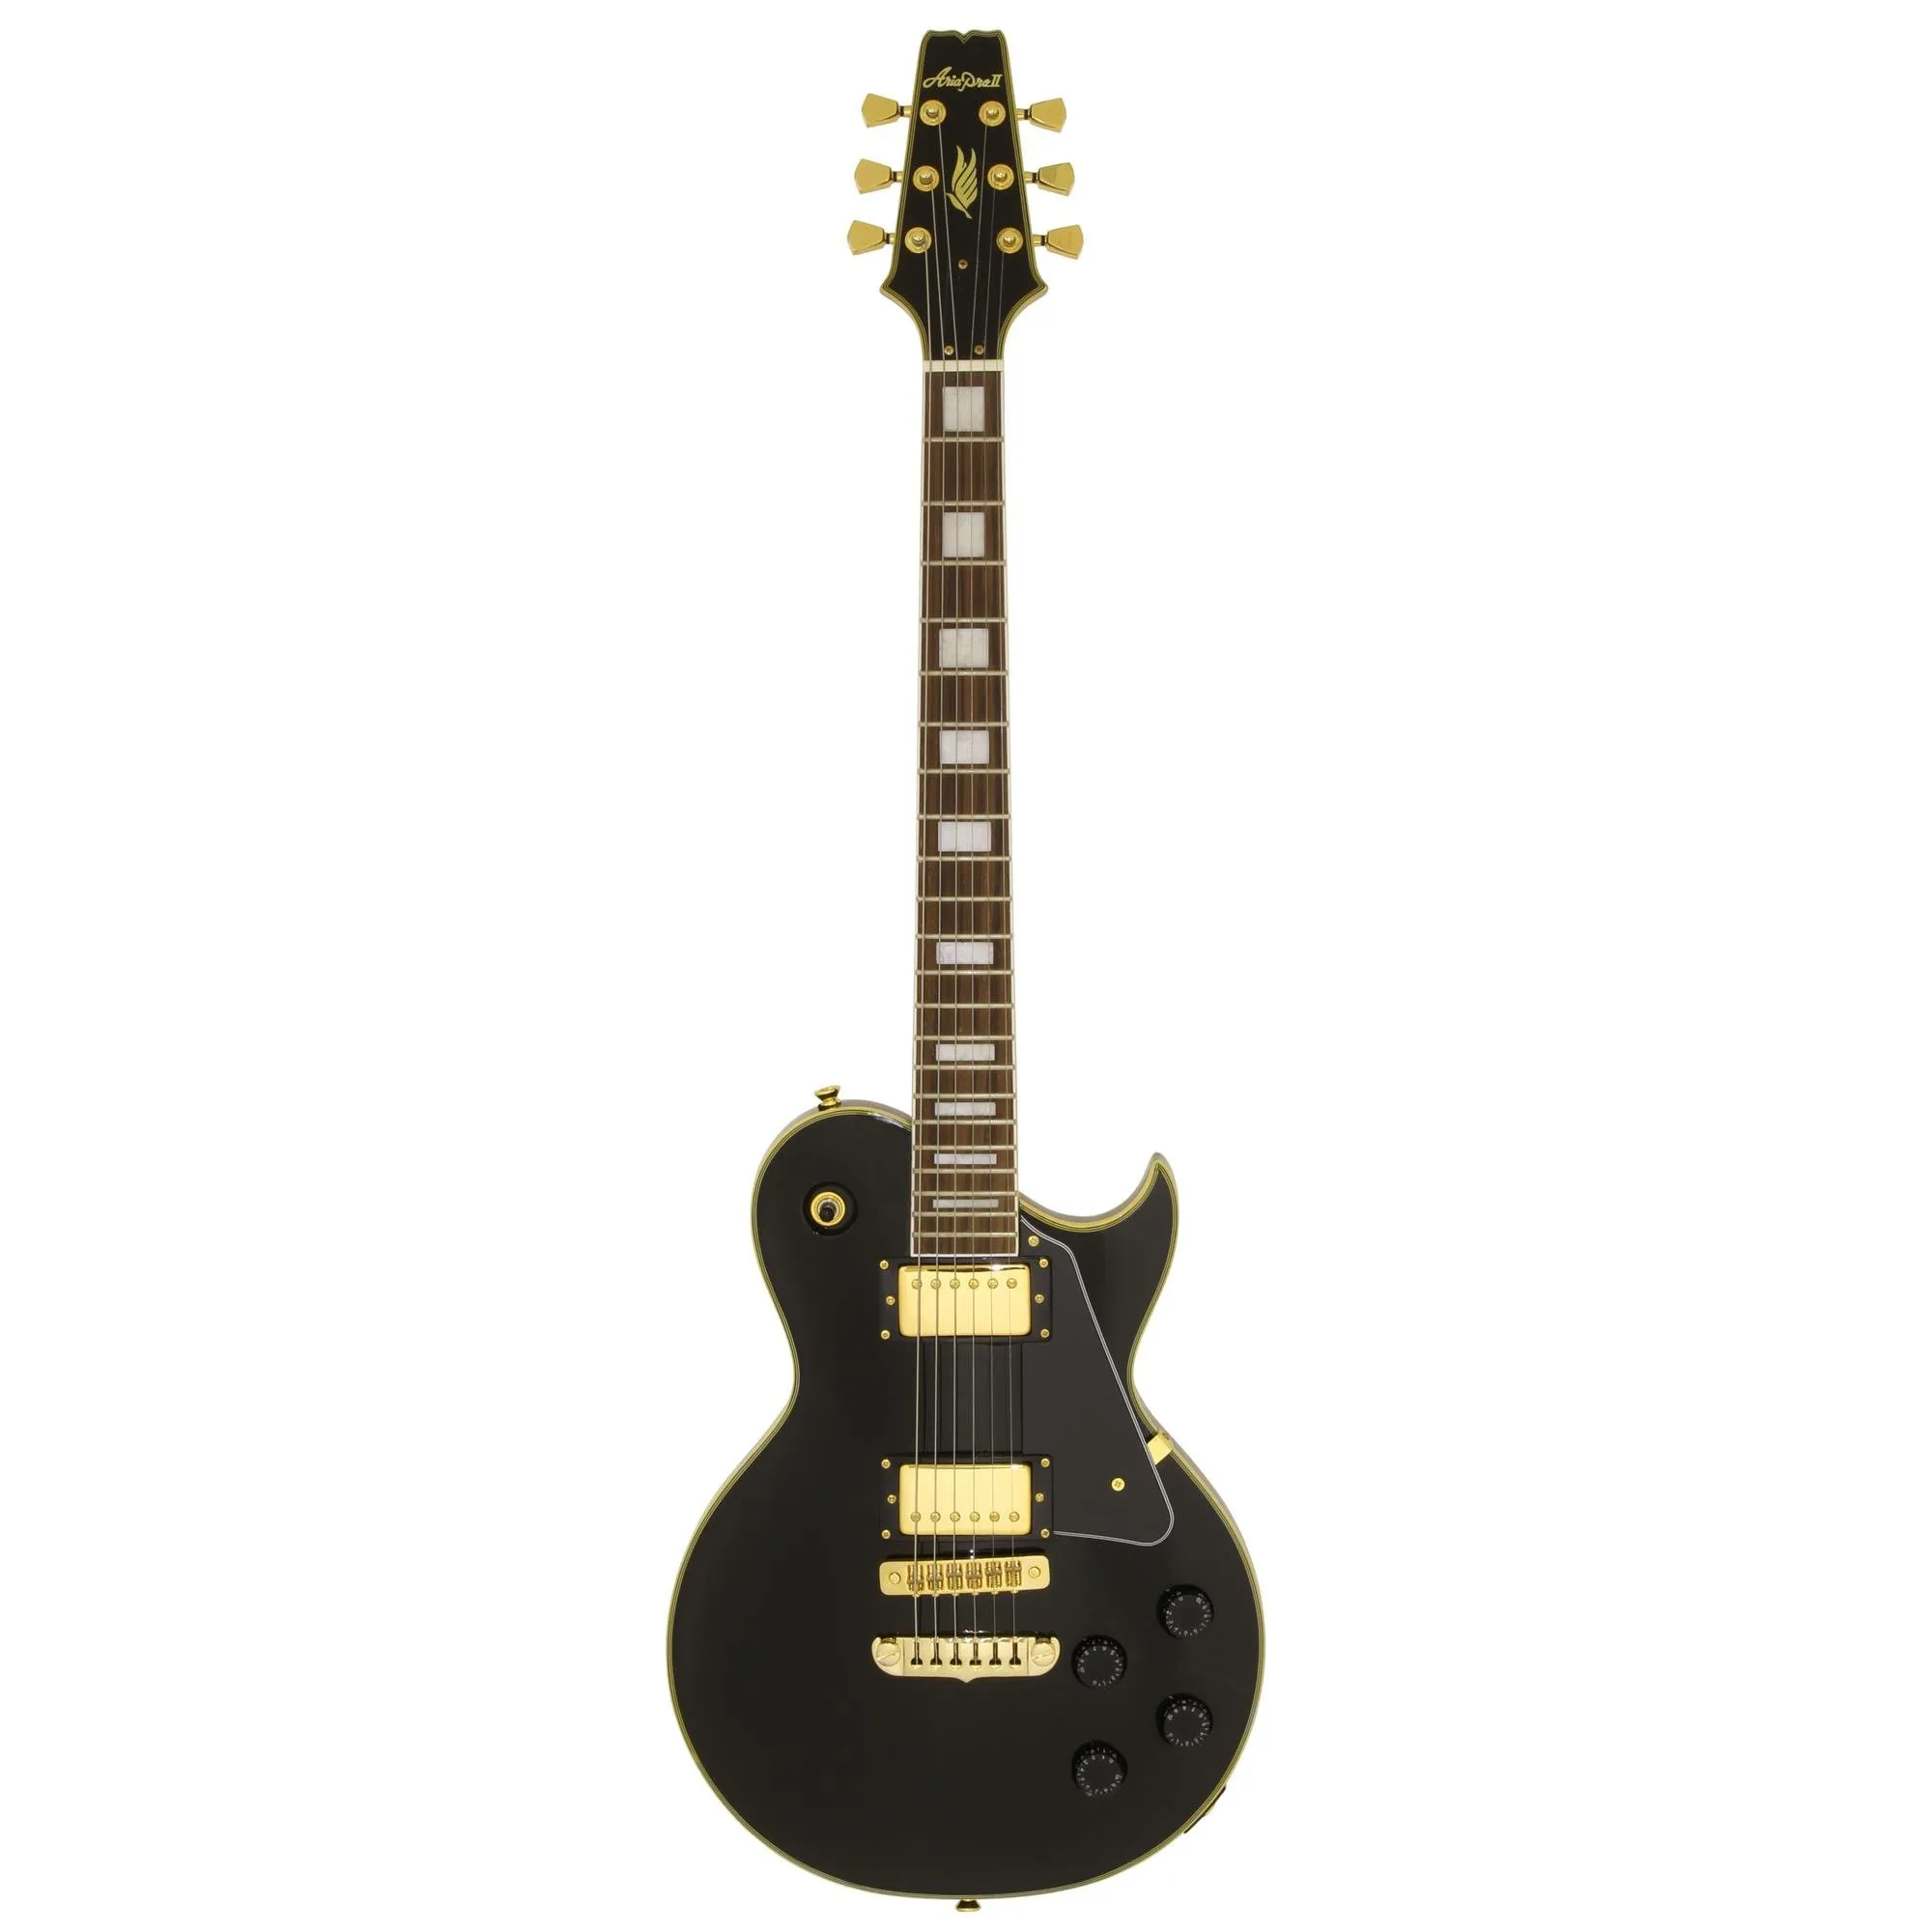 Guitarra Aria Pro II PE-350CST Aged Black por 2.904,00 à vista no boleto/pix ou parcele em até 12x sem juros. Compre na loja Mundomax!